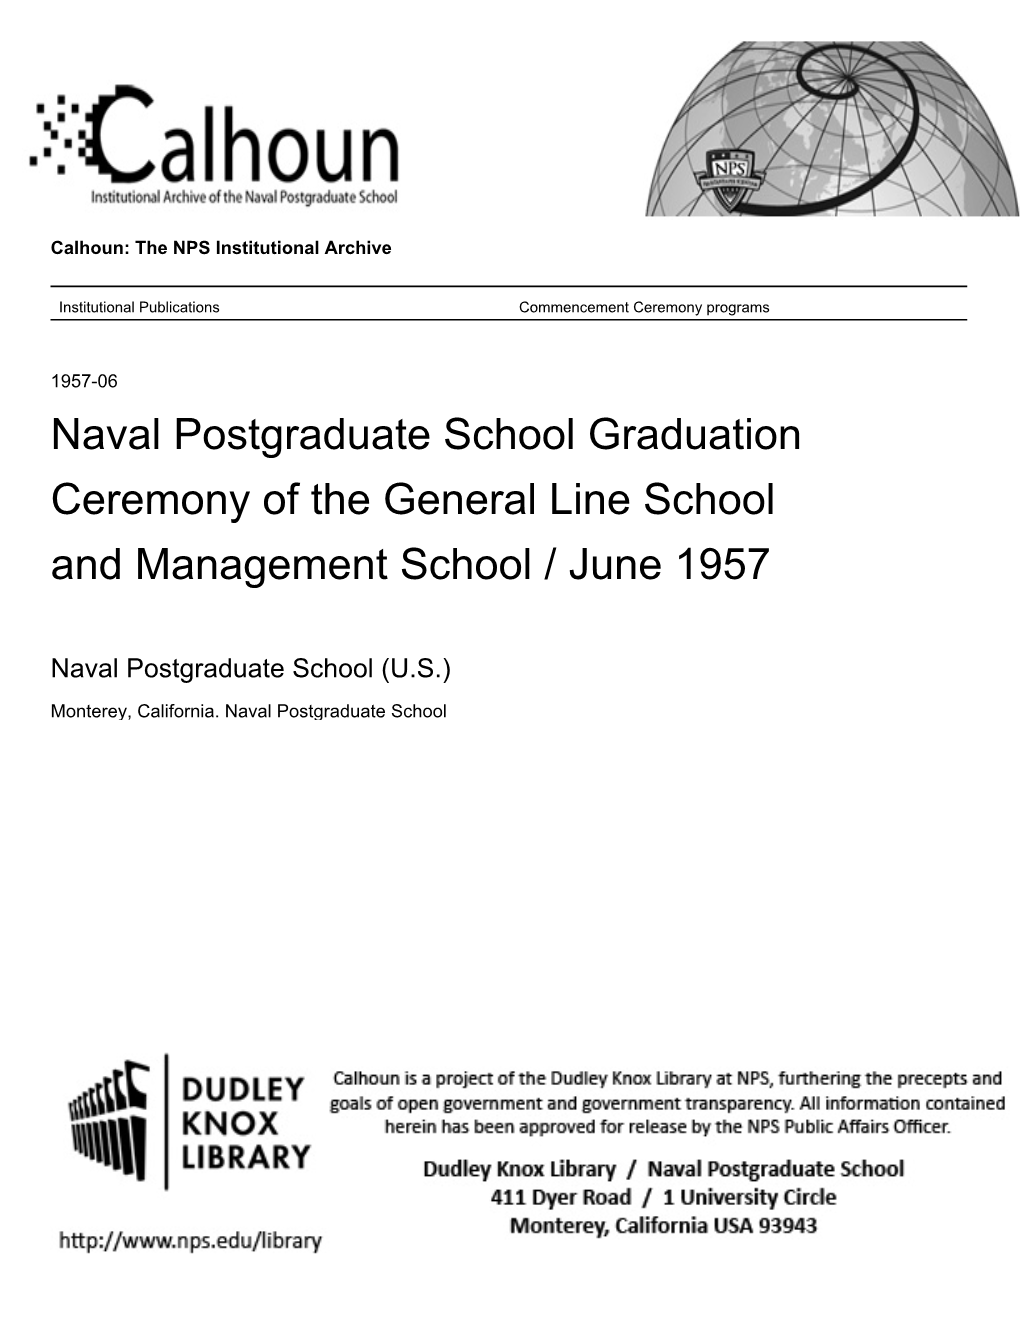 Naval Postgraduate School Graduation Ceremony of the General Line School and Management School / June 1957